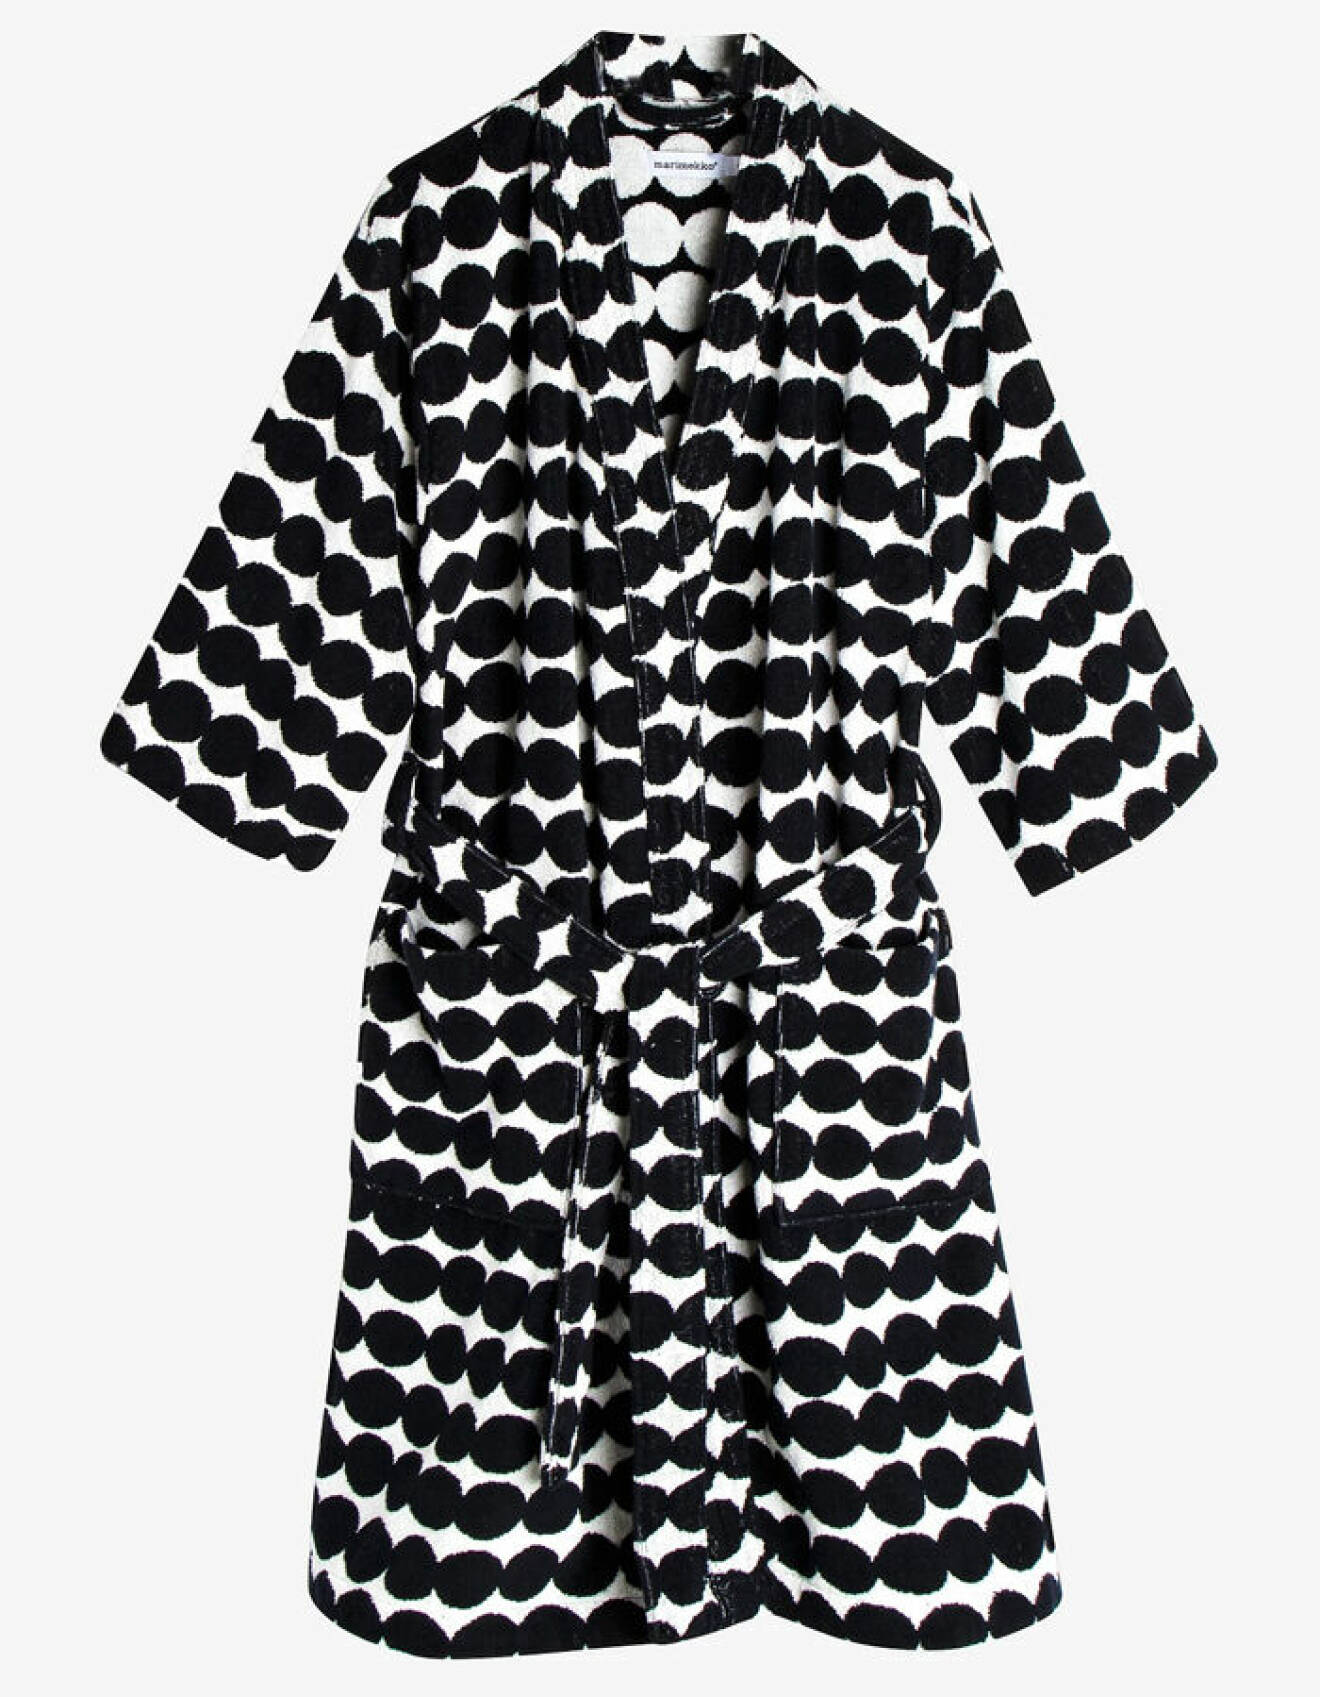 svartvit mönstrad morgonrock för dam från Marimekko